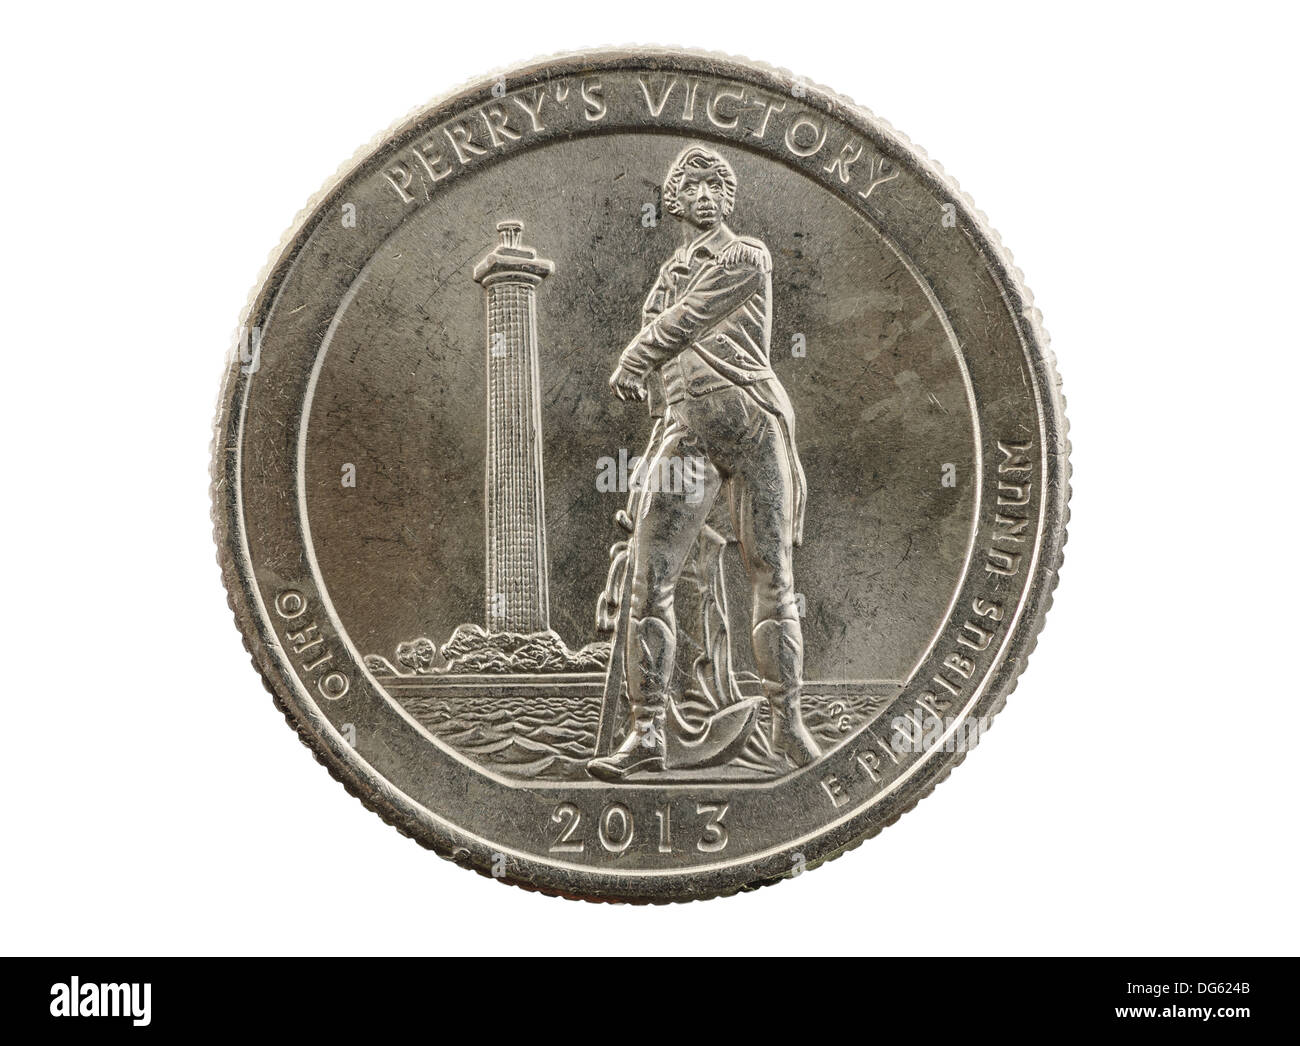 Perrys Vittoria Ohio trimestre commemorative coin isolato su bianco Foto Stock